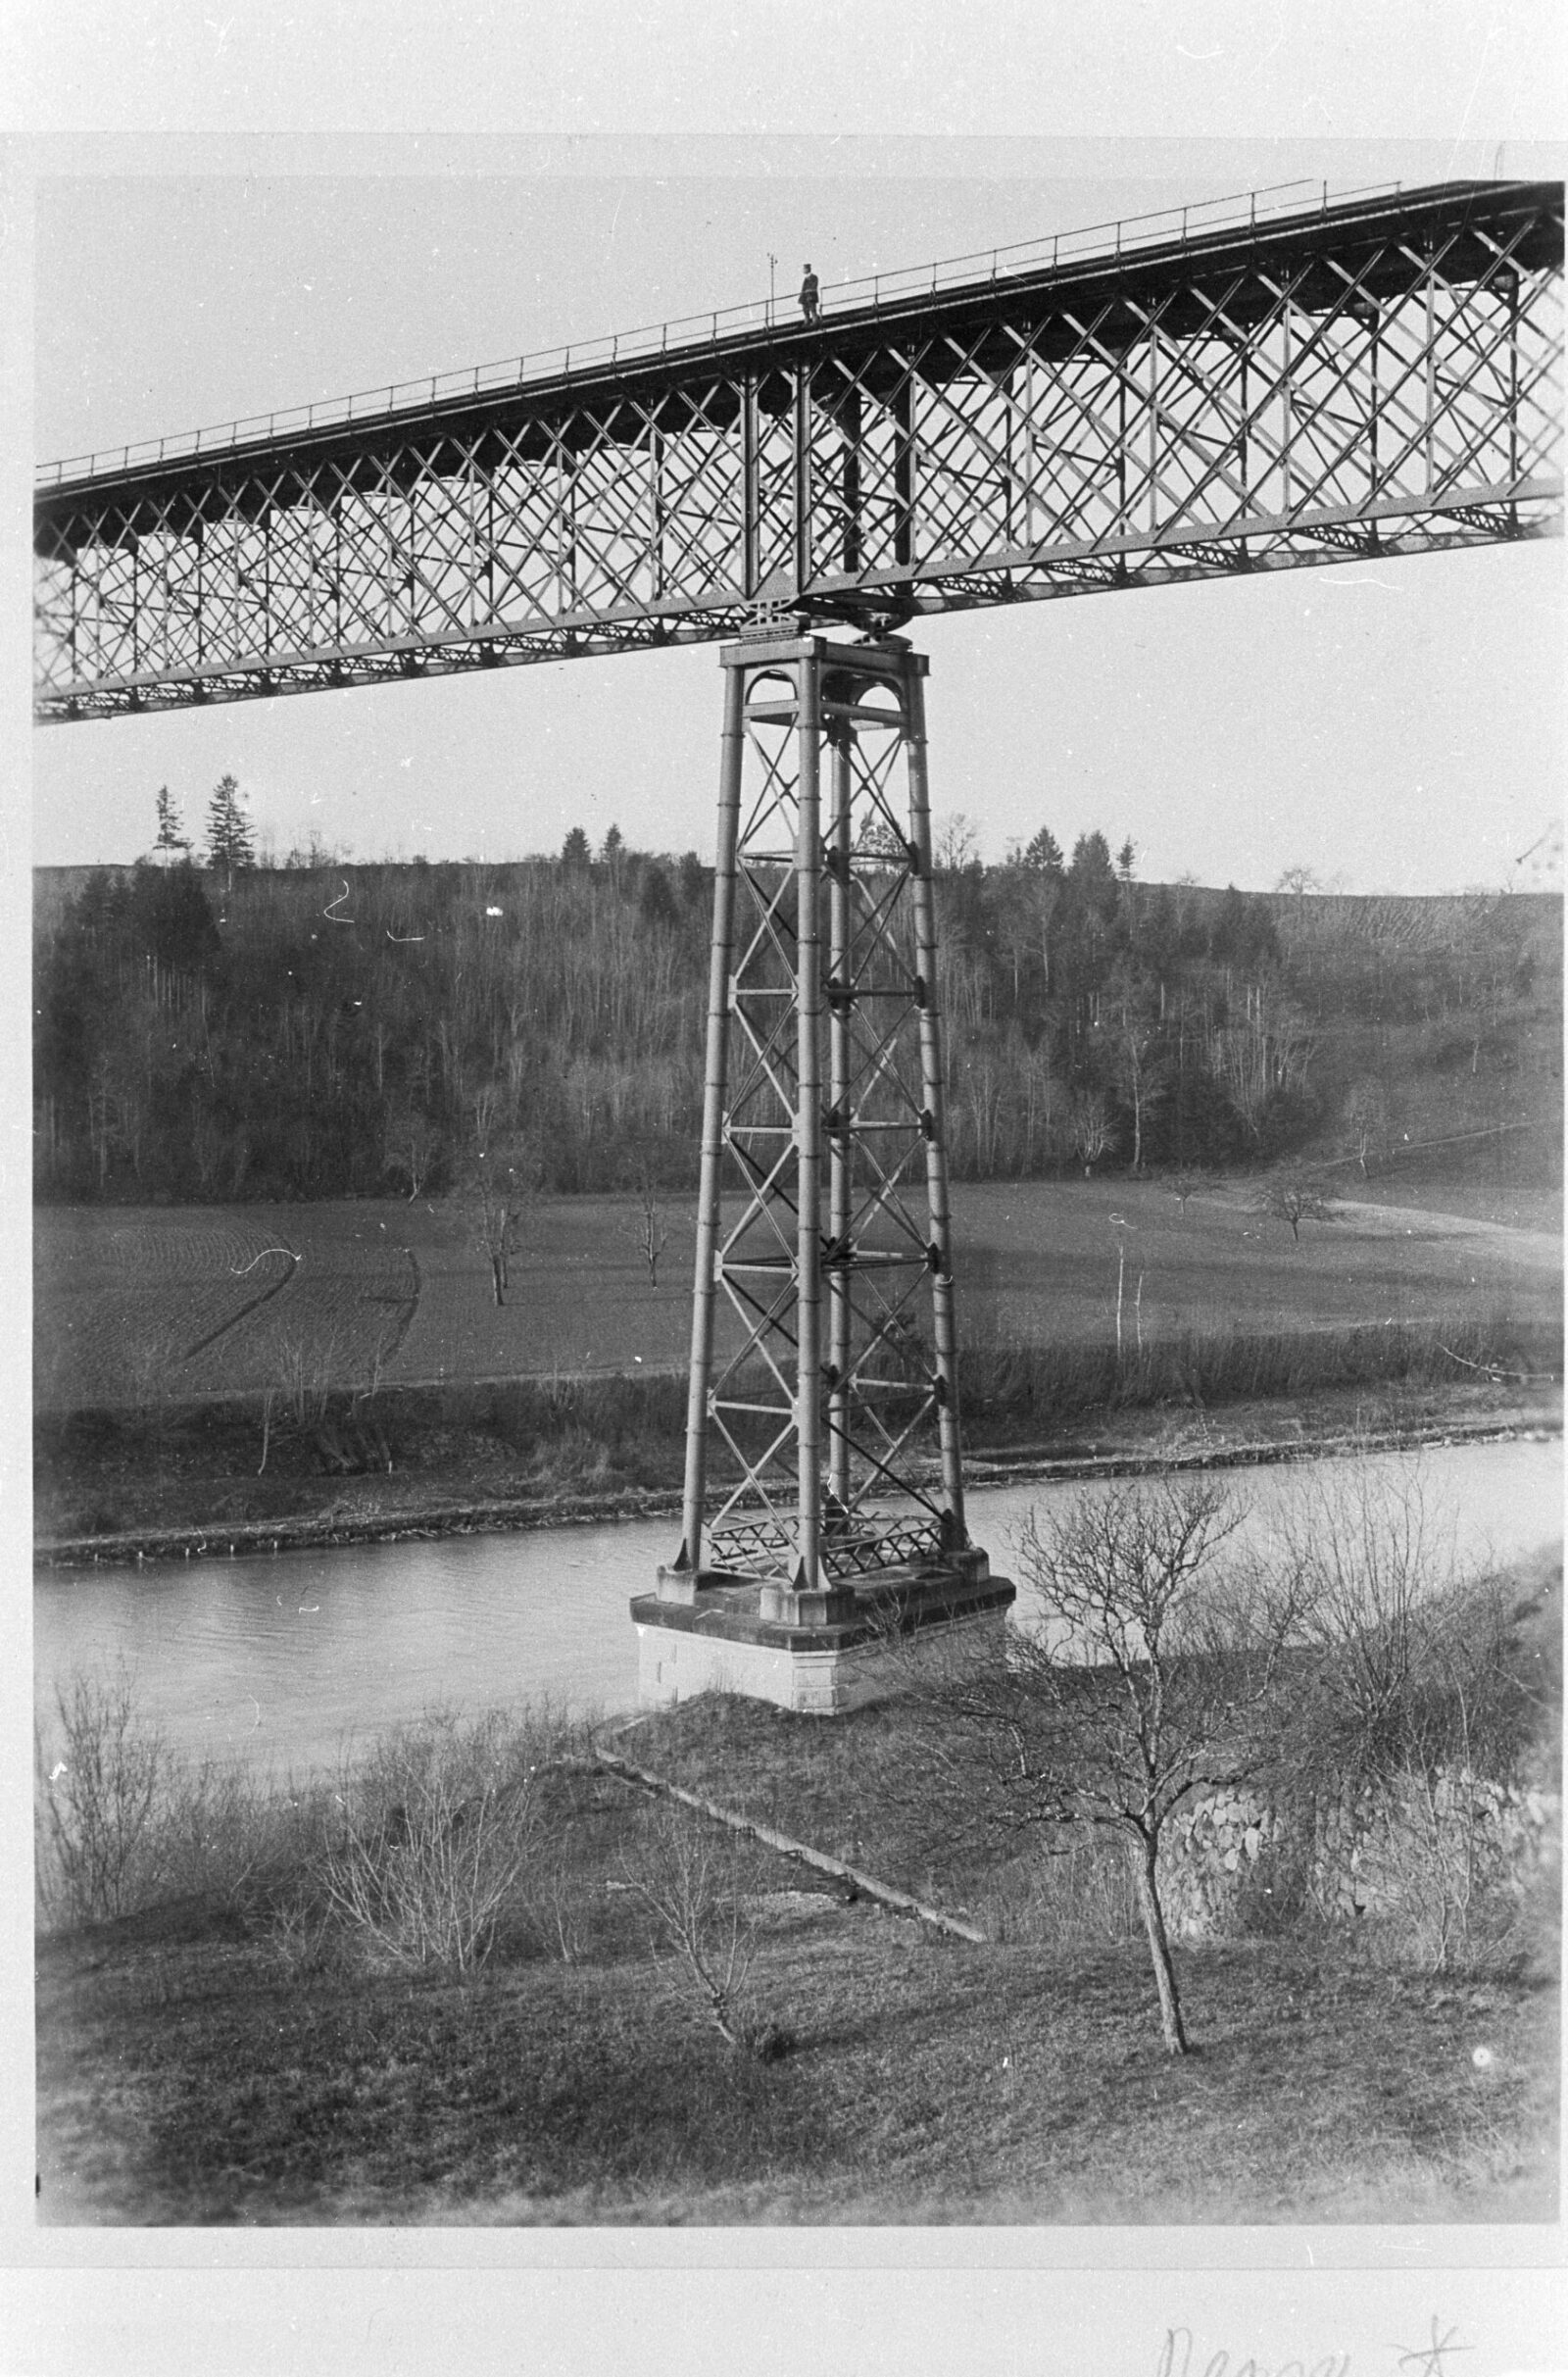 Die 1875 eröffnete Thurbrücke Ossingen bei Stein am Rhein war eine der ersten Eisenbahnbrücken Europas mit Stützpfeilern aus Schmiedeeisen. Anfang 2021 hat die SBB die denkmalgeschützte Brücke vorsorglich gesperrt, um deren Tragsicherheit von Fachleuten der ETH überprüfen zu lassen.